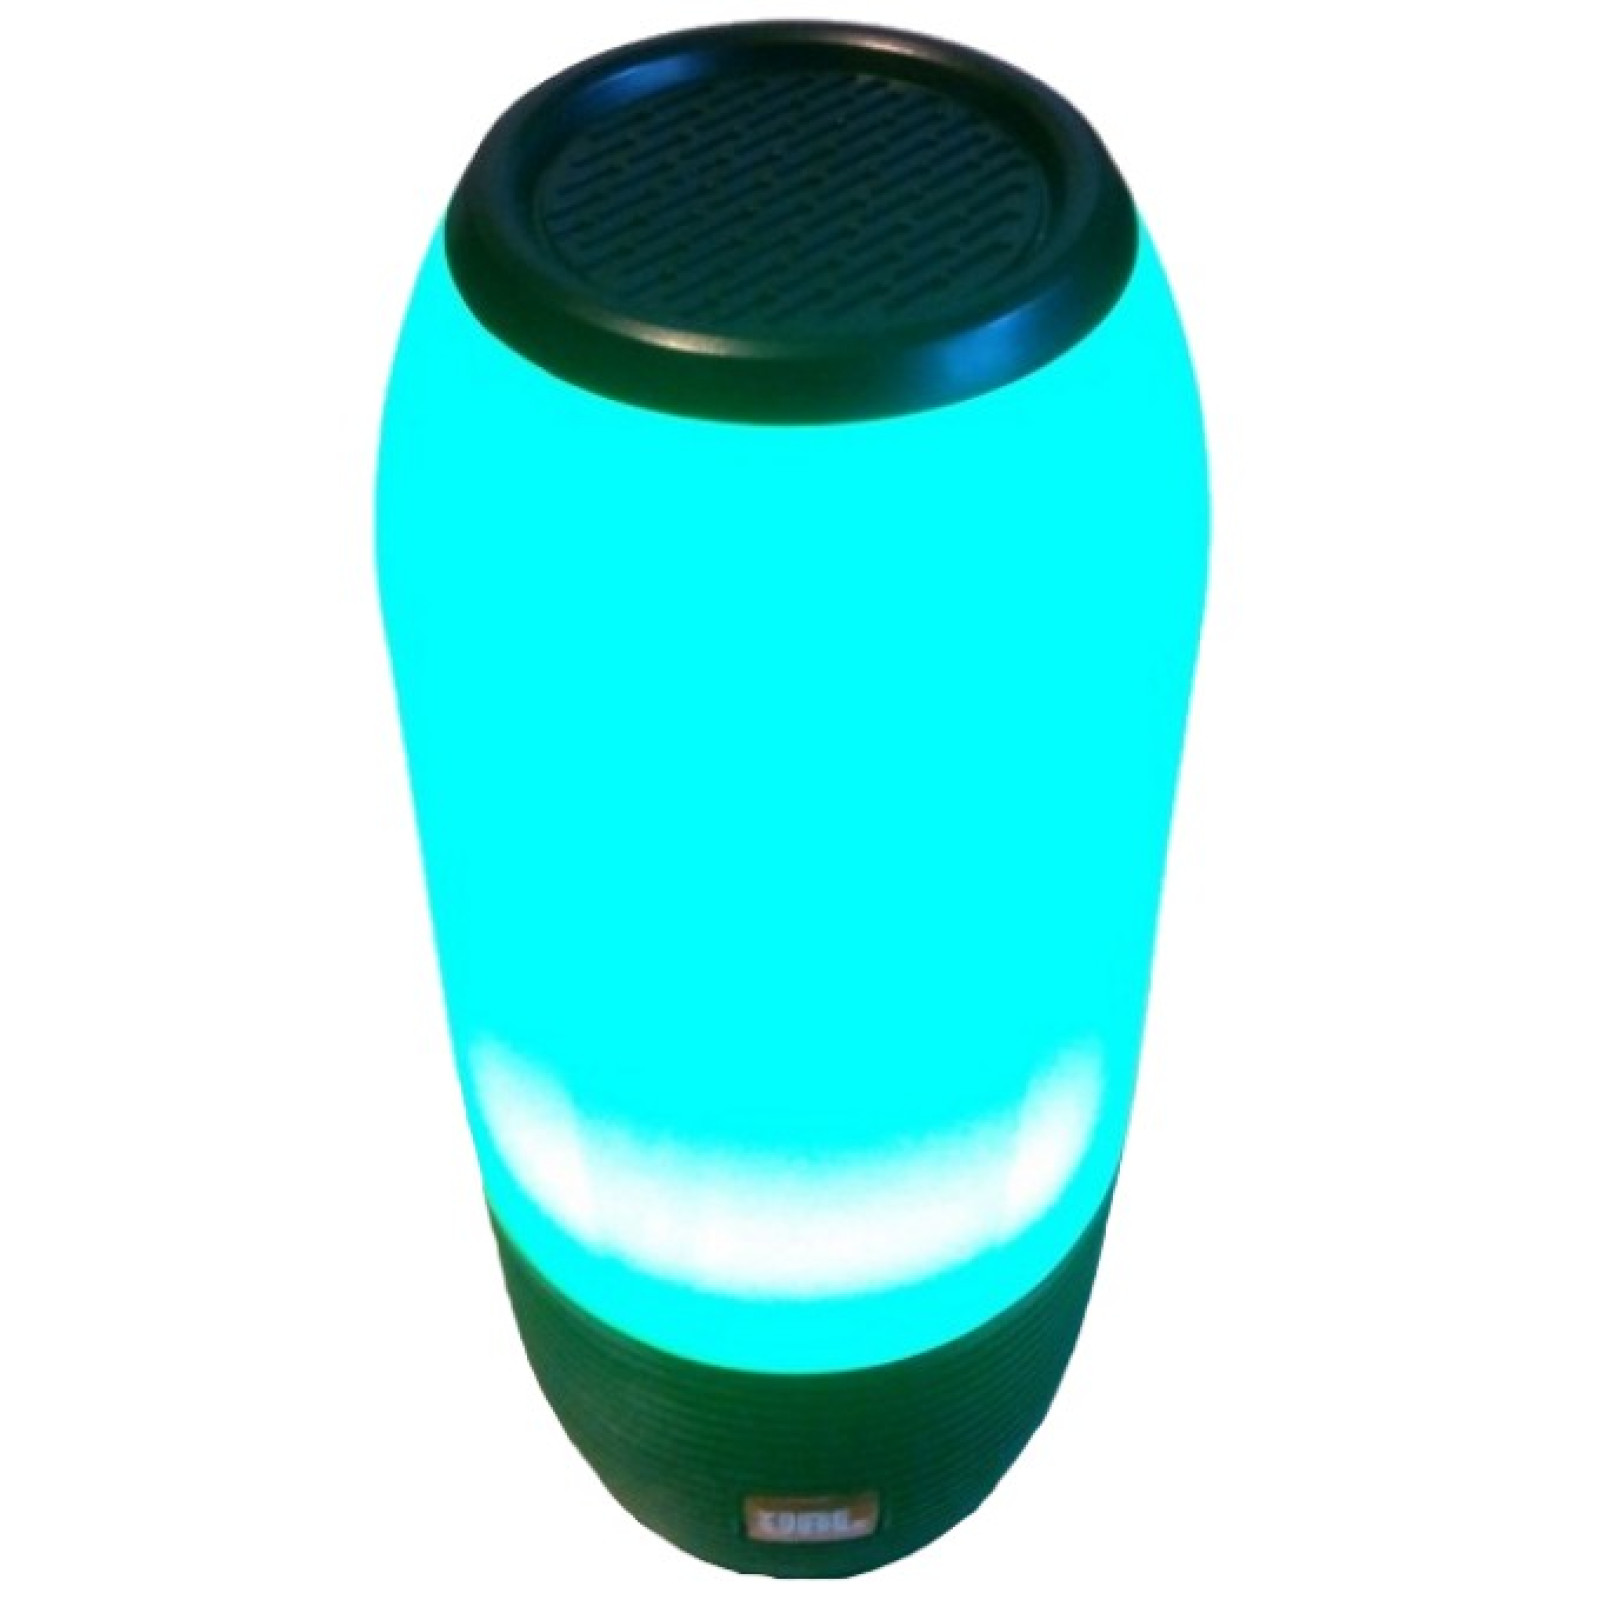 Портативная колонка UKC Q690 Pulse, Портативная bluetooth колонка c цветной подсветкой с FM, MP3